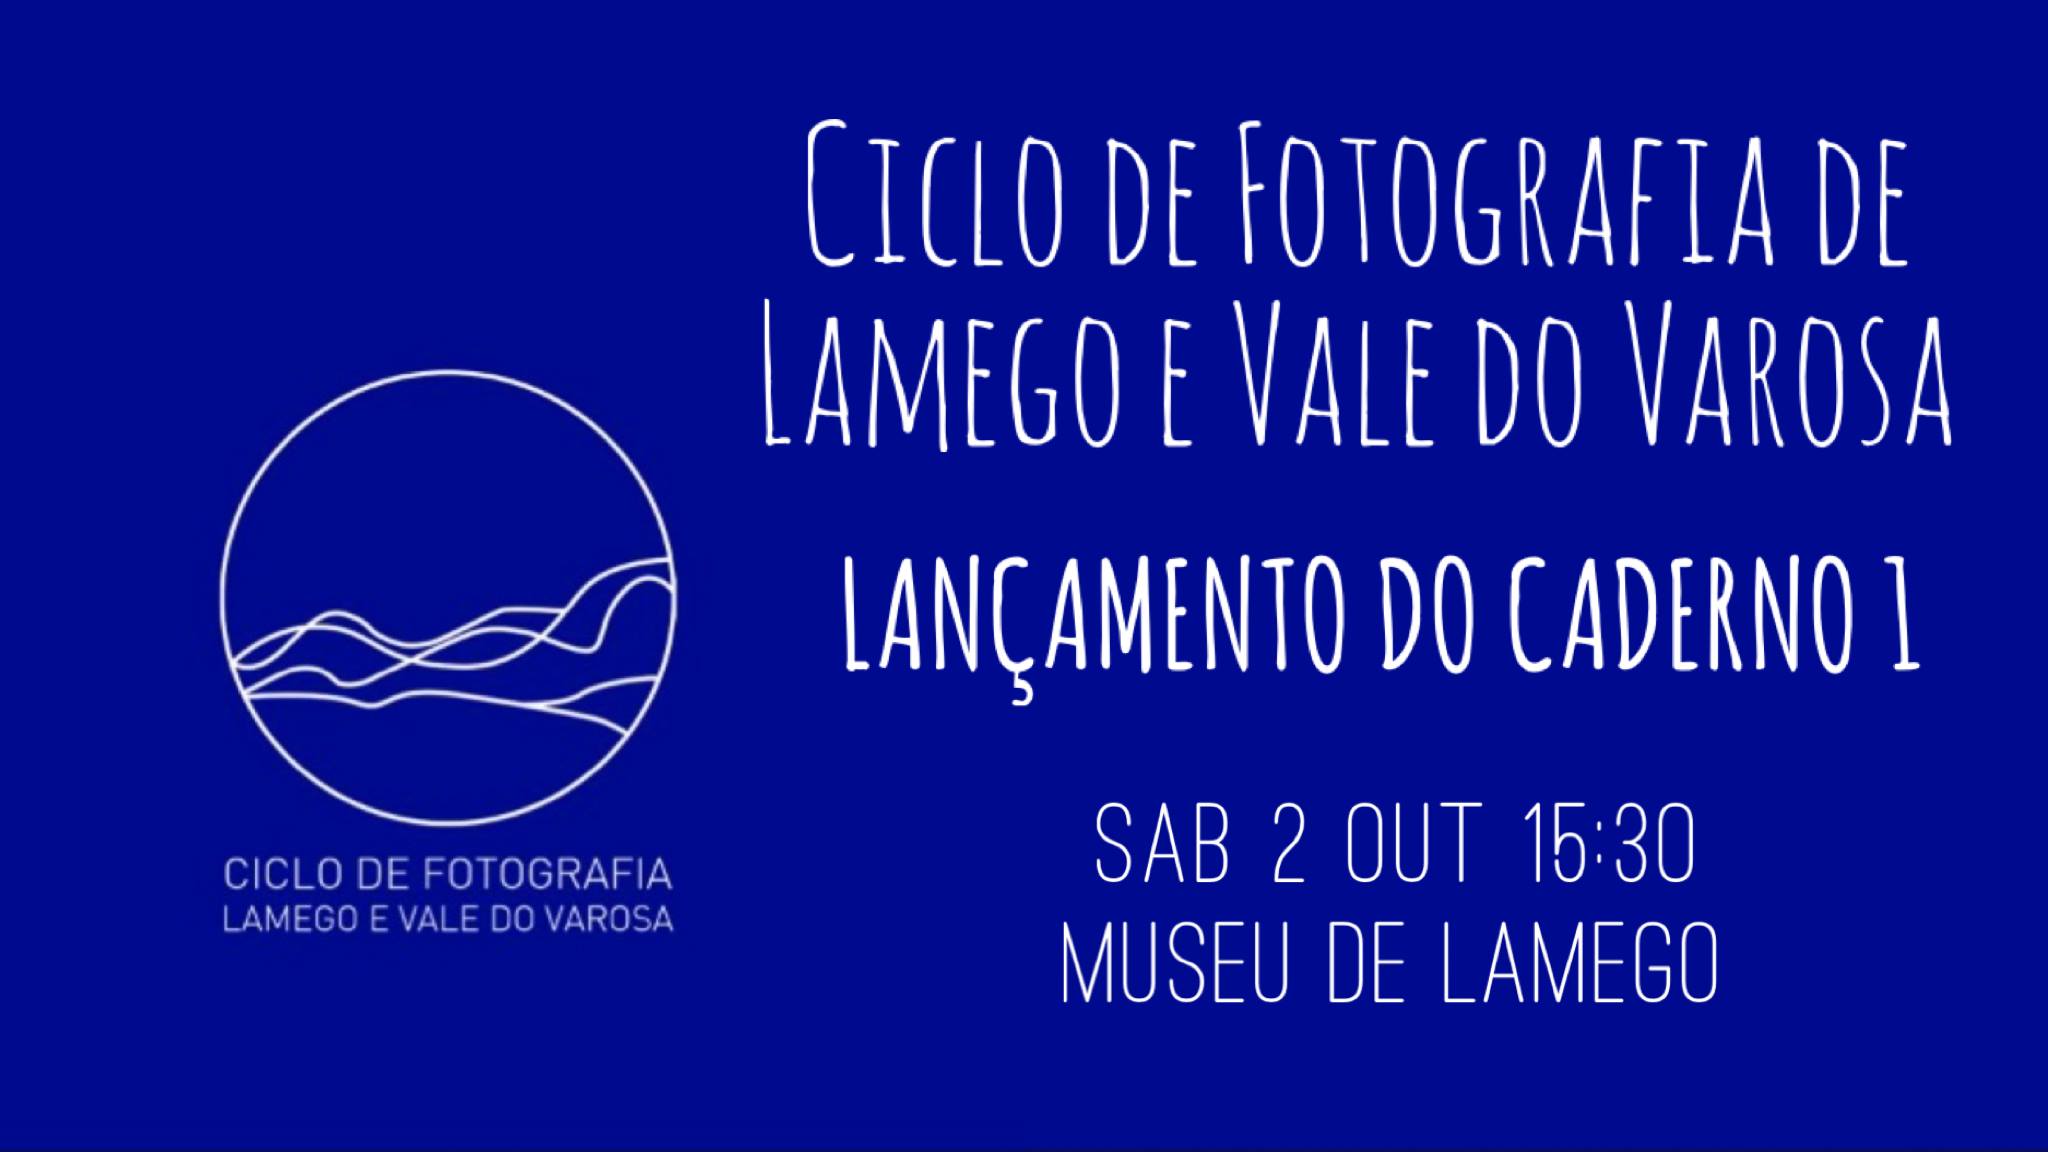 Lançamento do Caderno 1 do Ciclo de Fotografia de Lamego e Vale do Varosa